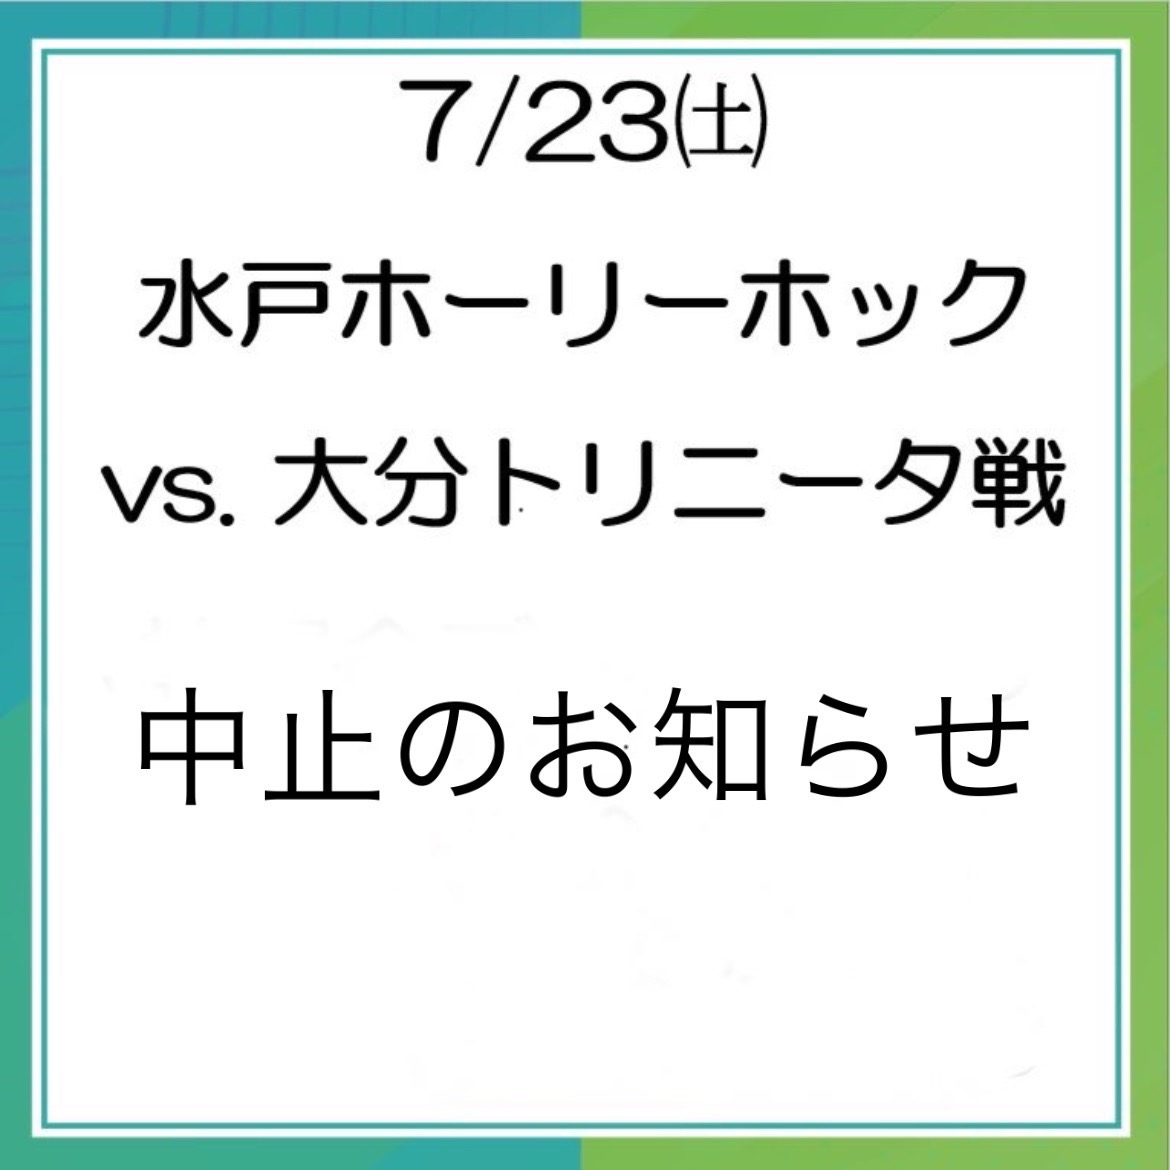  【試合中止（延期）のお知らせ】水戸ホーリーホック 抽選会ブース 2022年7月23日(土)